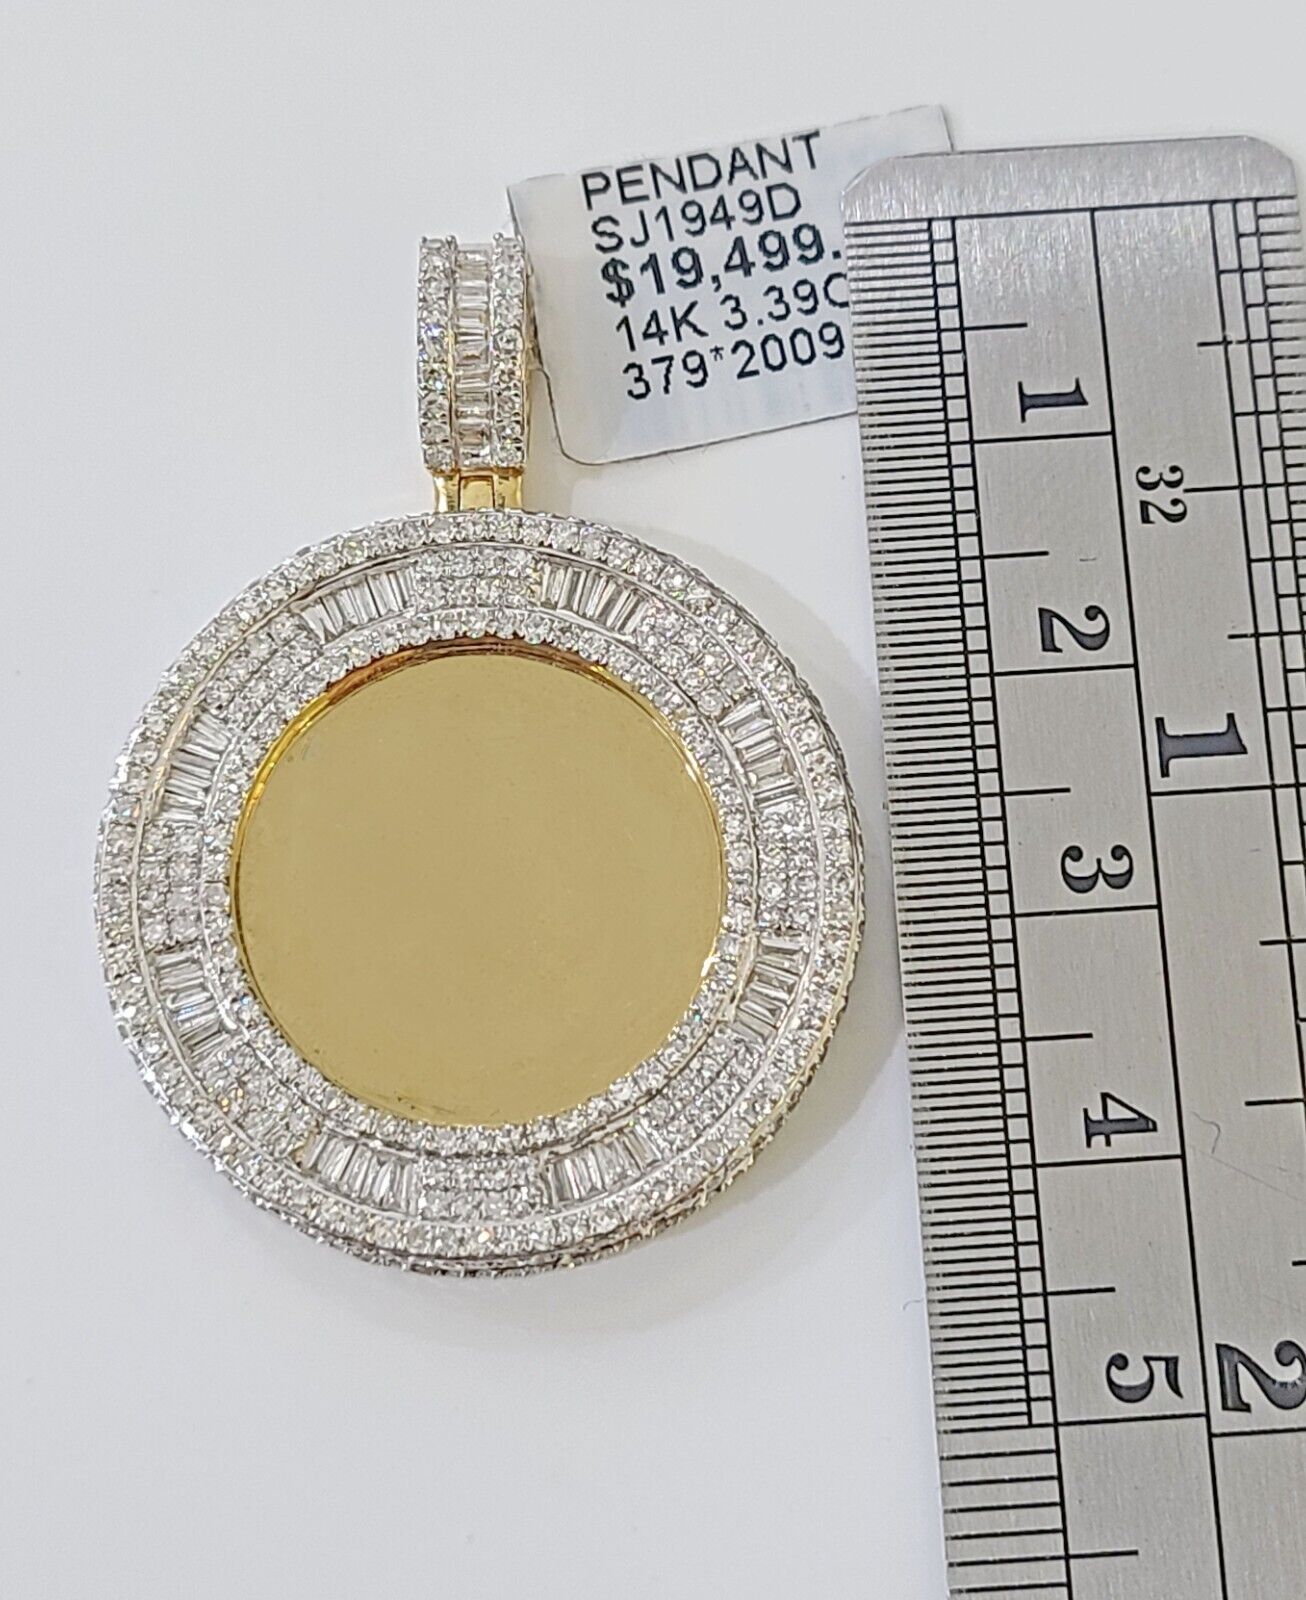 14k Real Yellow Gold And Diamond Circular Charm / Pendant 3.39CT